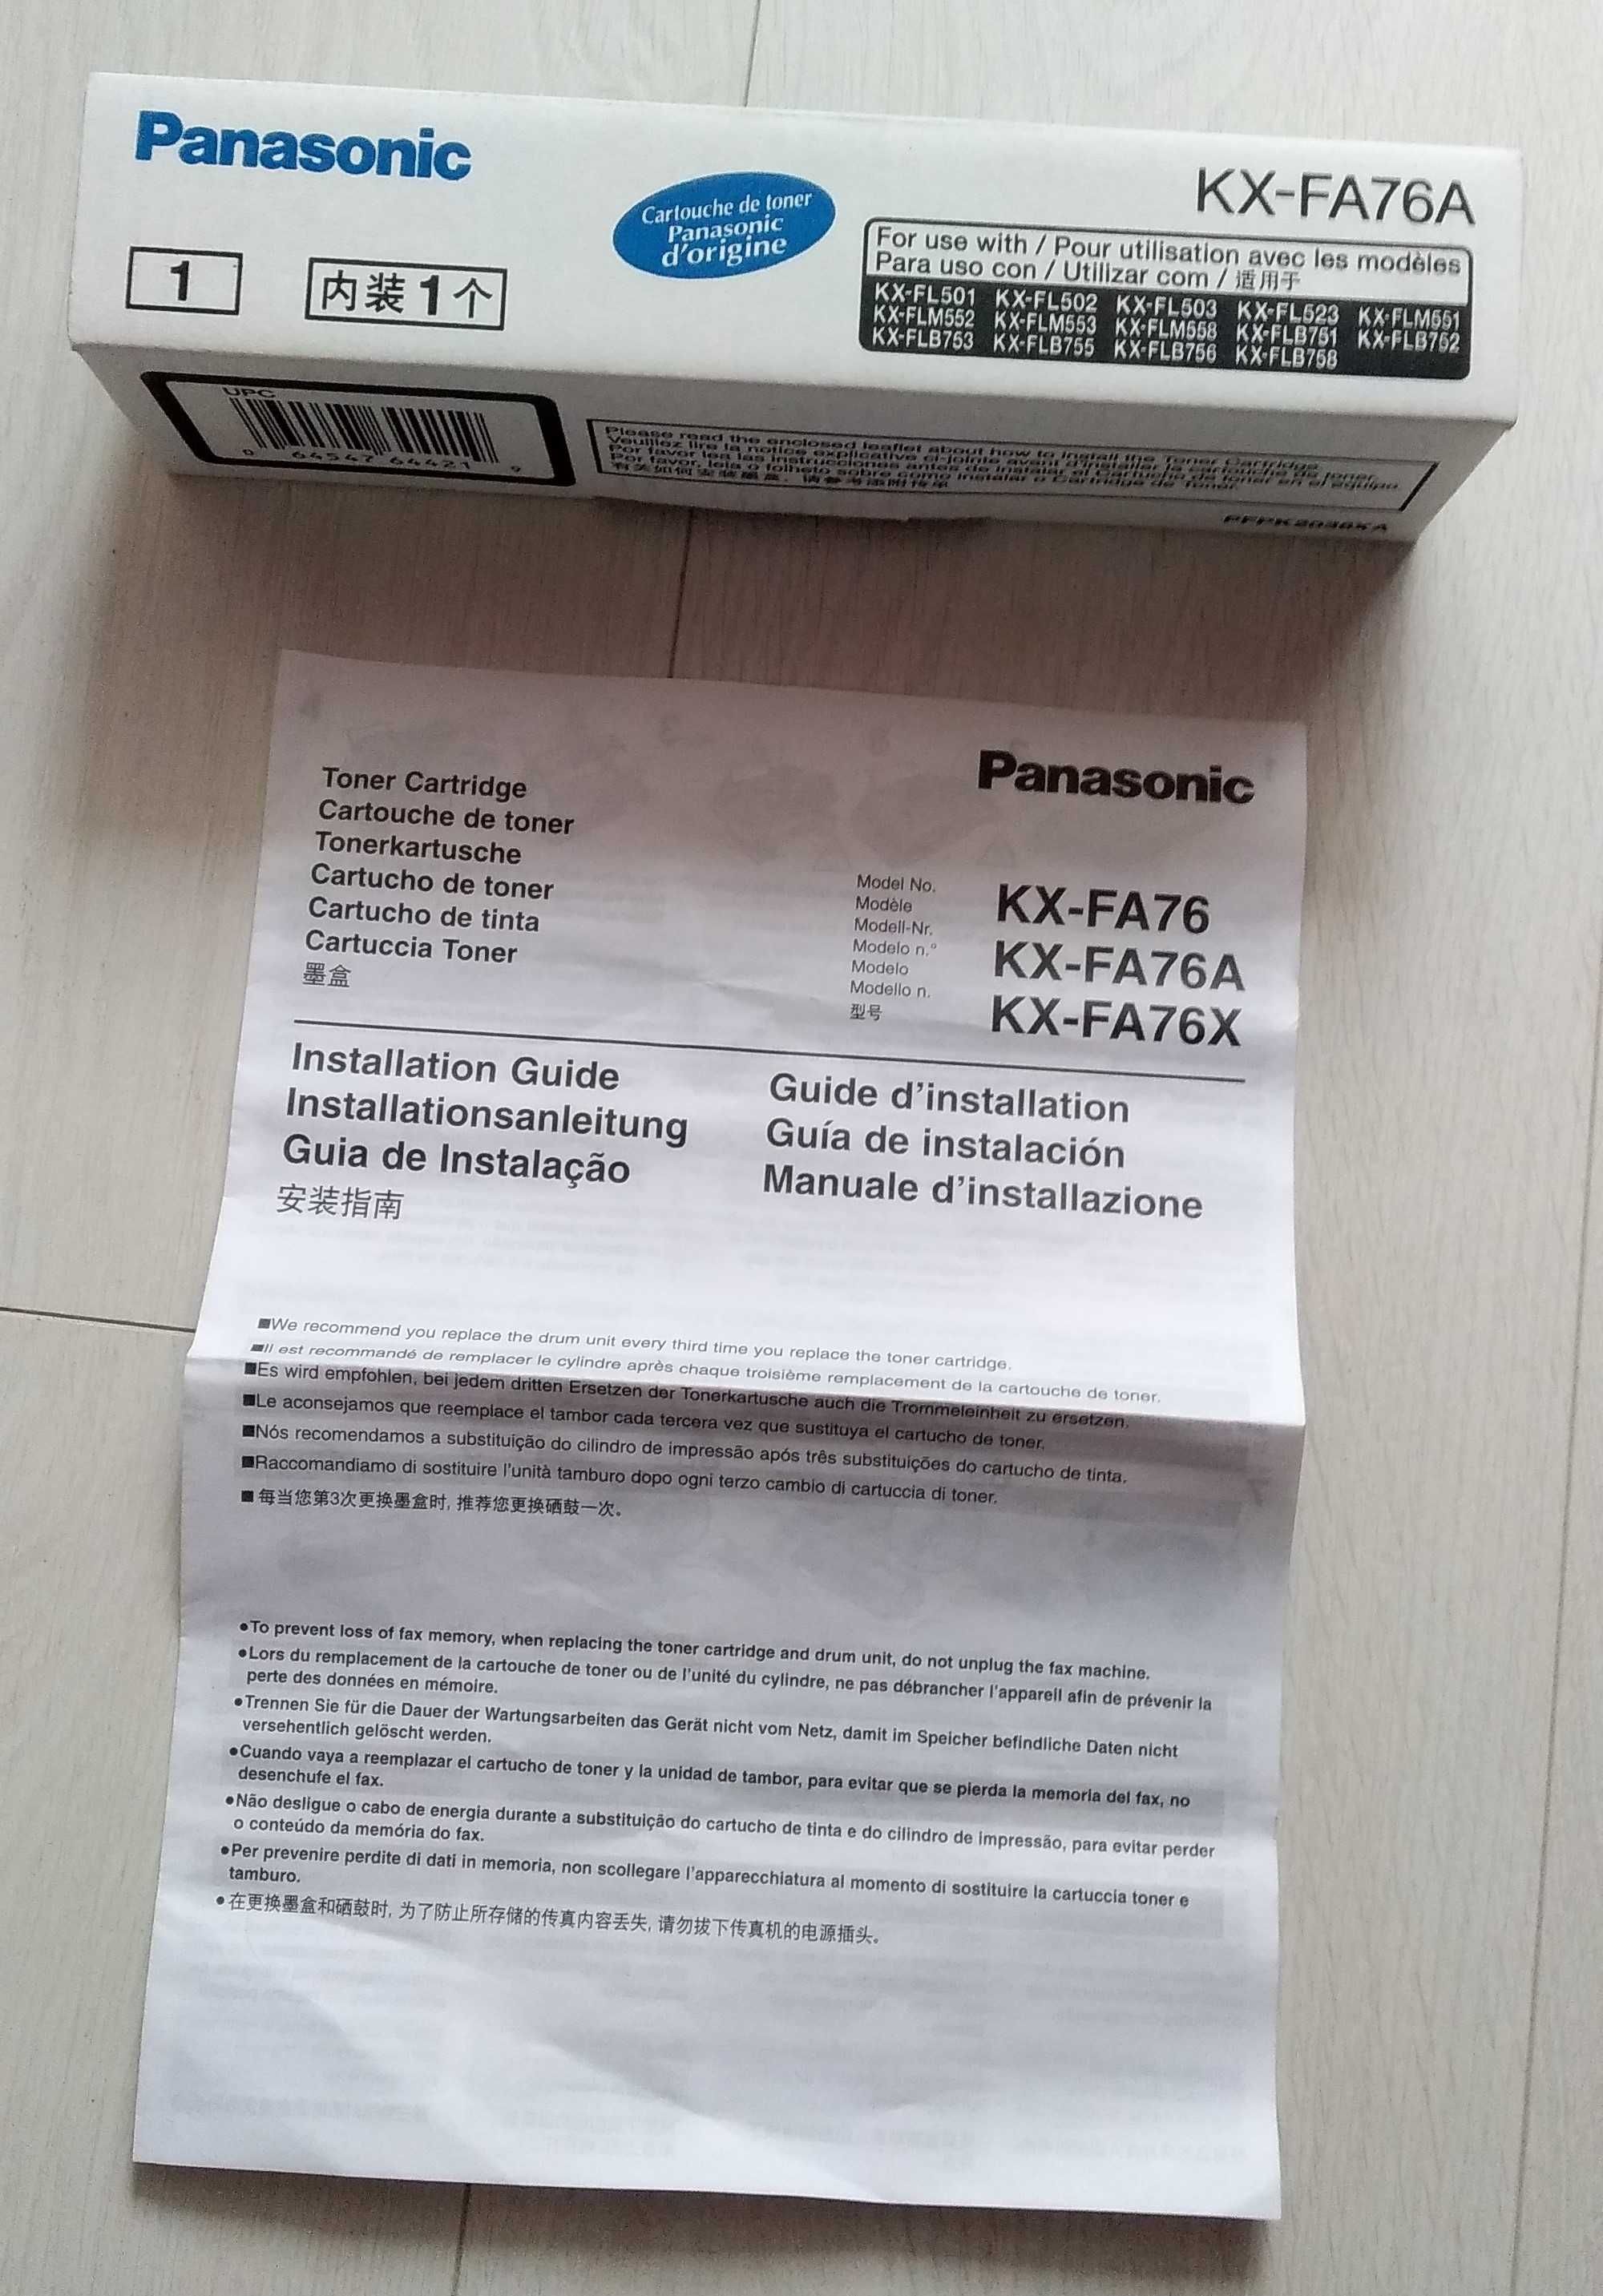 Panasonic KX-FA76A, KX-FL503 KX-FL523, KX-FLB753, KX-FLB758, KX-FLM558